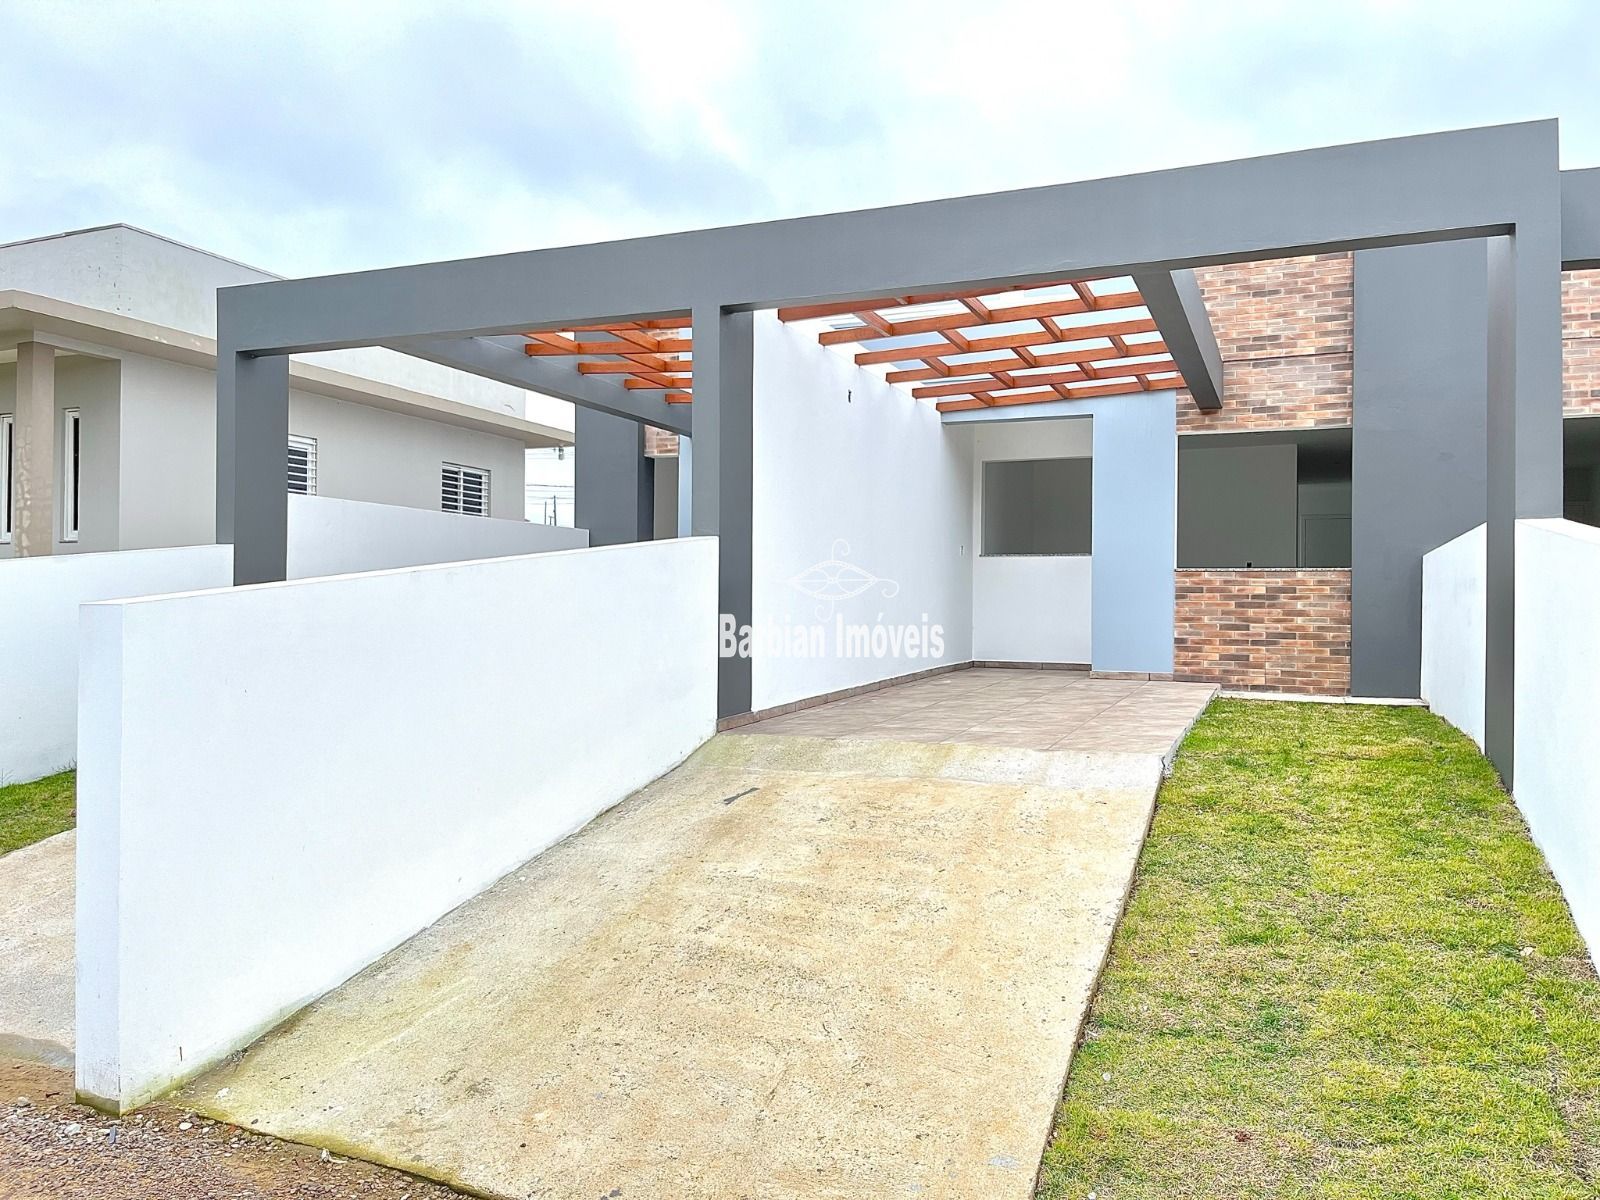 Casa  venda  no Joo Alves - Santa Cruz do Sul, RS. Imveis